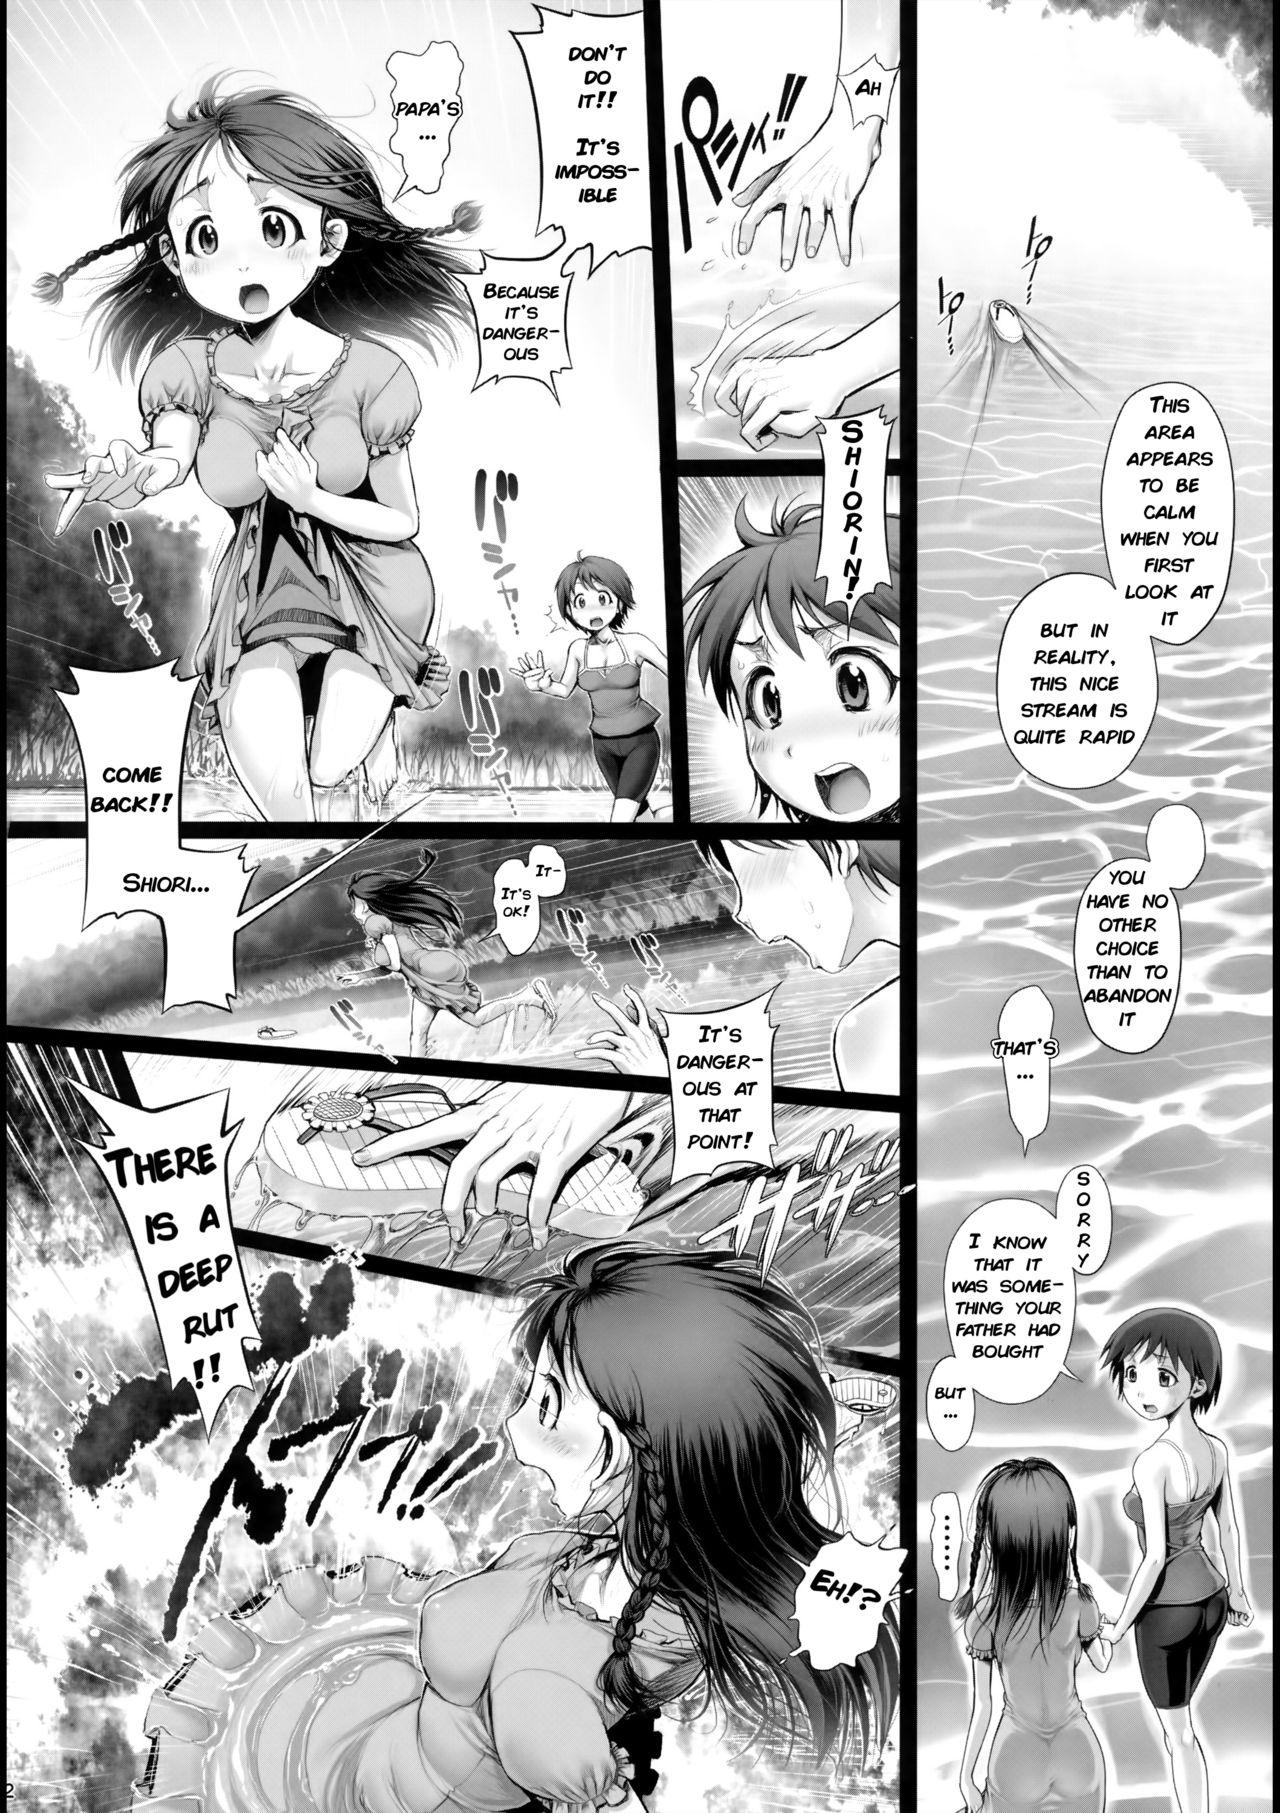 Doggystyle Angel Crisis 3 - Shizukana Kohan no Mori no Kage kara - Original Missionary Position Porn - Page 3